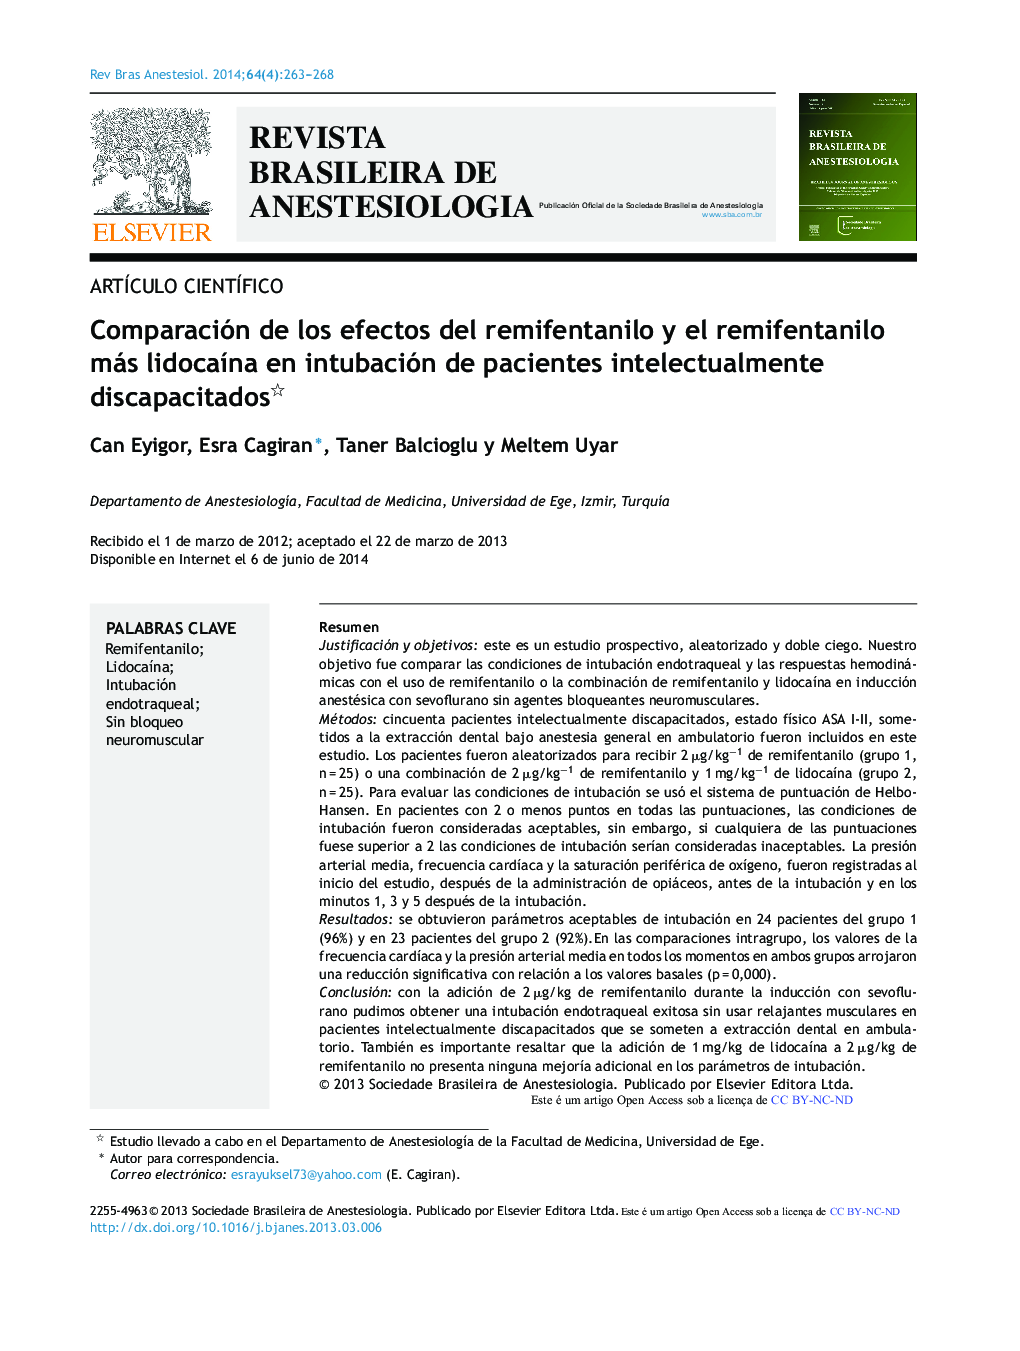 Comparación de los efectos del remifentanilo y el remifentanilo más lidocaína en intubación de pacientes intelectualmente discapacitados 